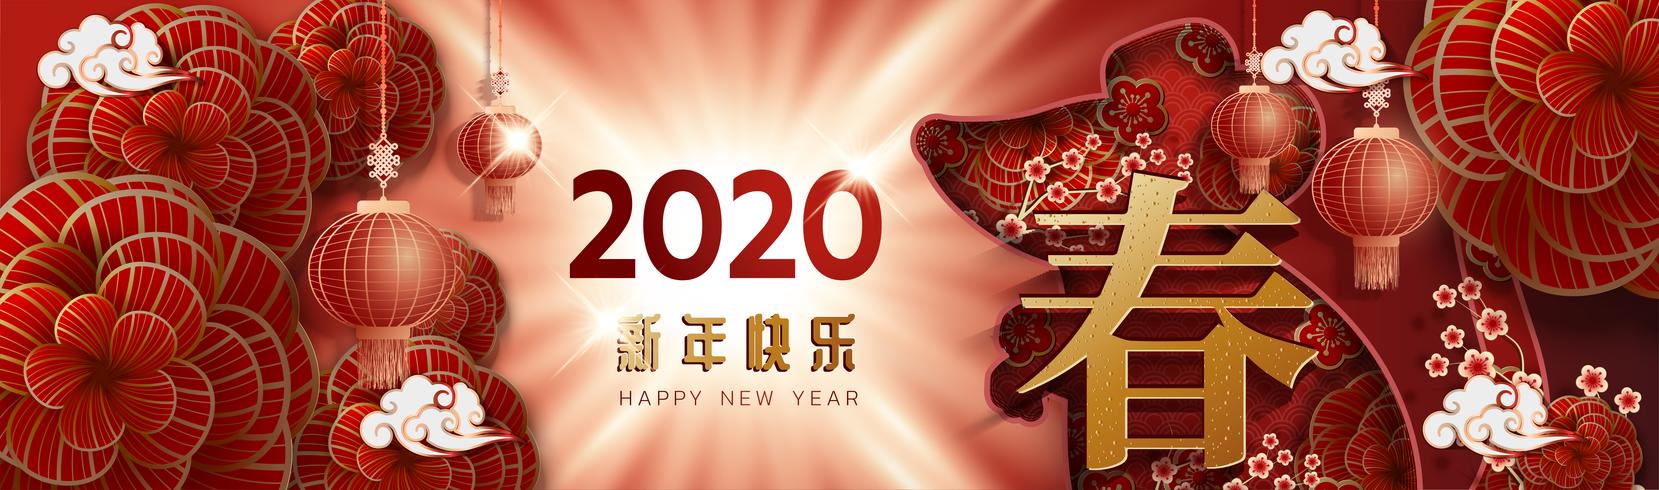 2020 Chinesisches Neujahrsfest Sternzeichen Grußkarte vektor